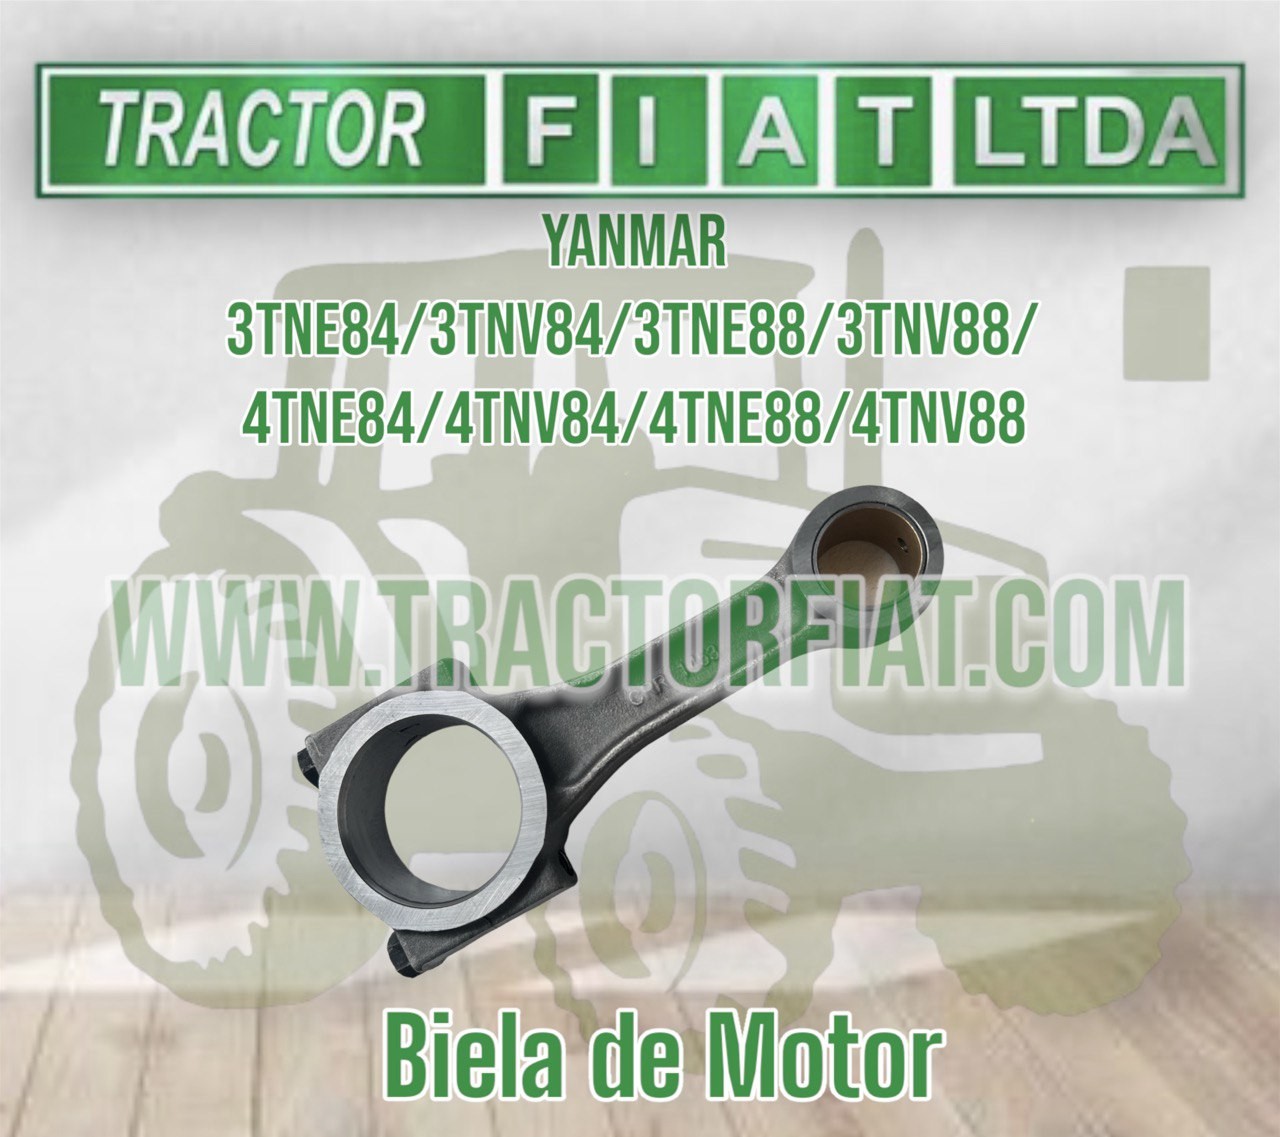 BIELA MOTOR - YANMAR SERIES 84 Y 88 / 3 Y 4 CILINDROS